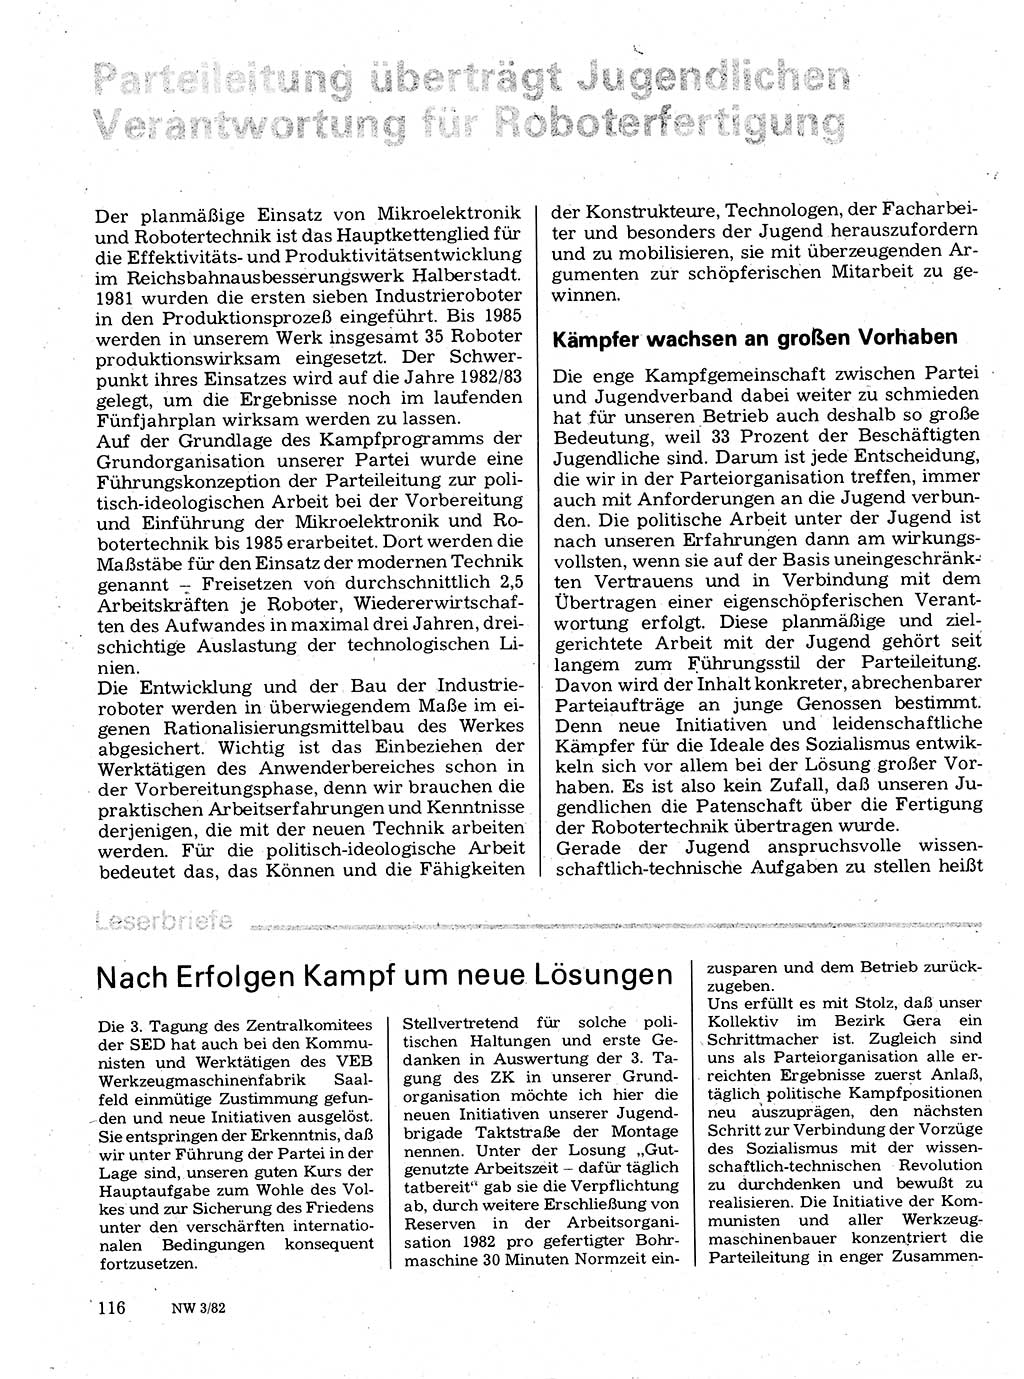 Neuer Weg (NW), Organ des Zentralkomitees (ZK) der SED (Sozialistische Einheitspartei Deutschlands) für Fragen des Parteilebens, 37. Jahrgang [Deutsche Demokratische Republik (DDR)] 1982, Seite 116 (NW ZK SED DDR 1982, S. 116)